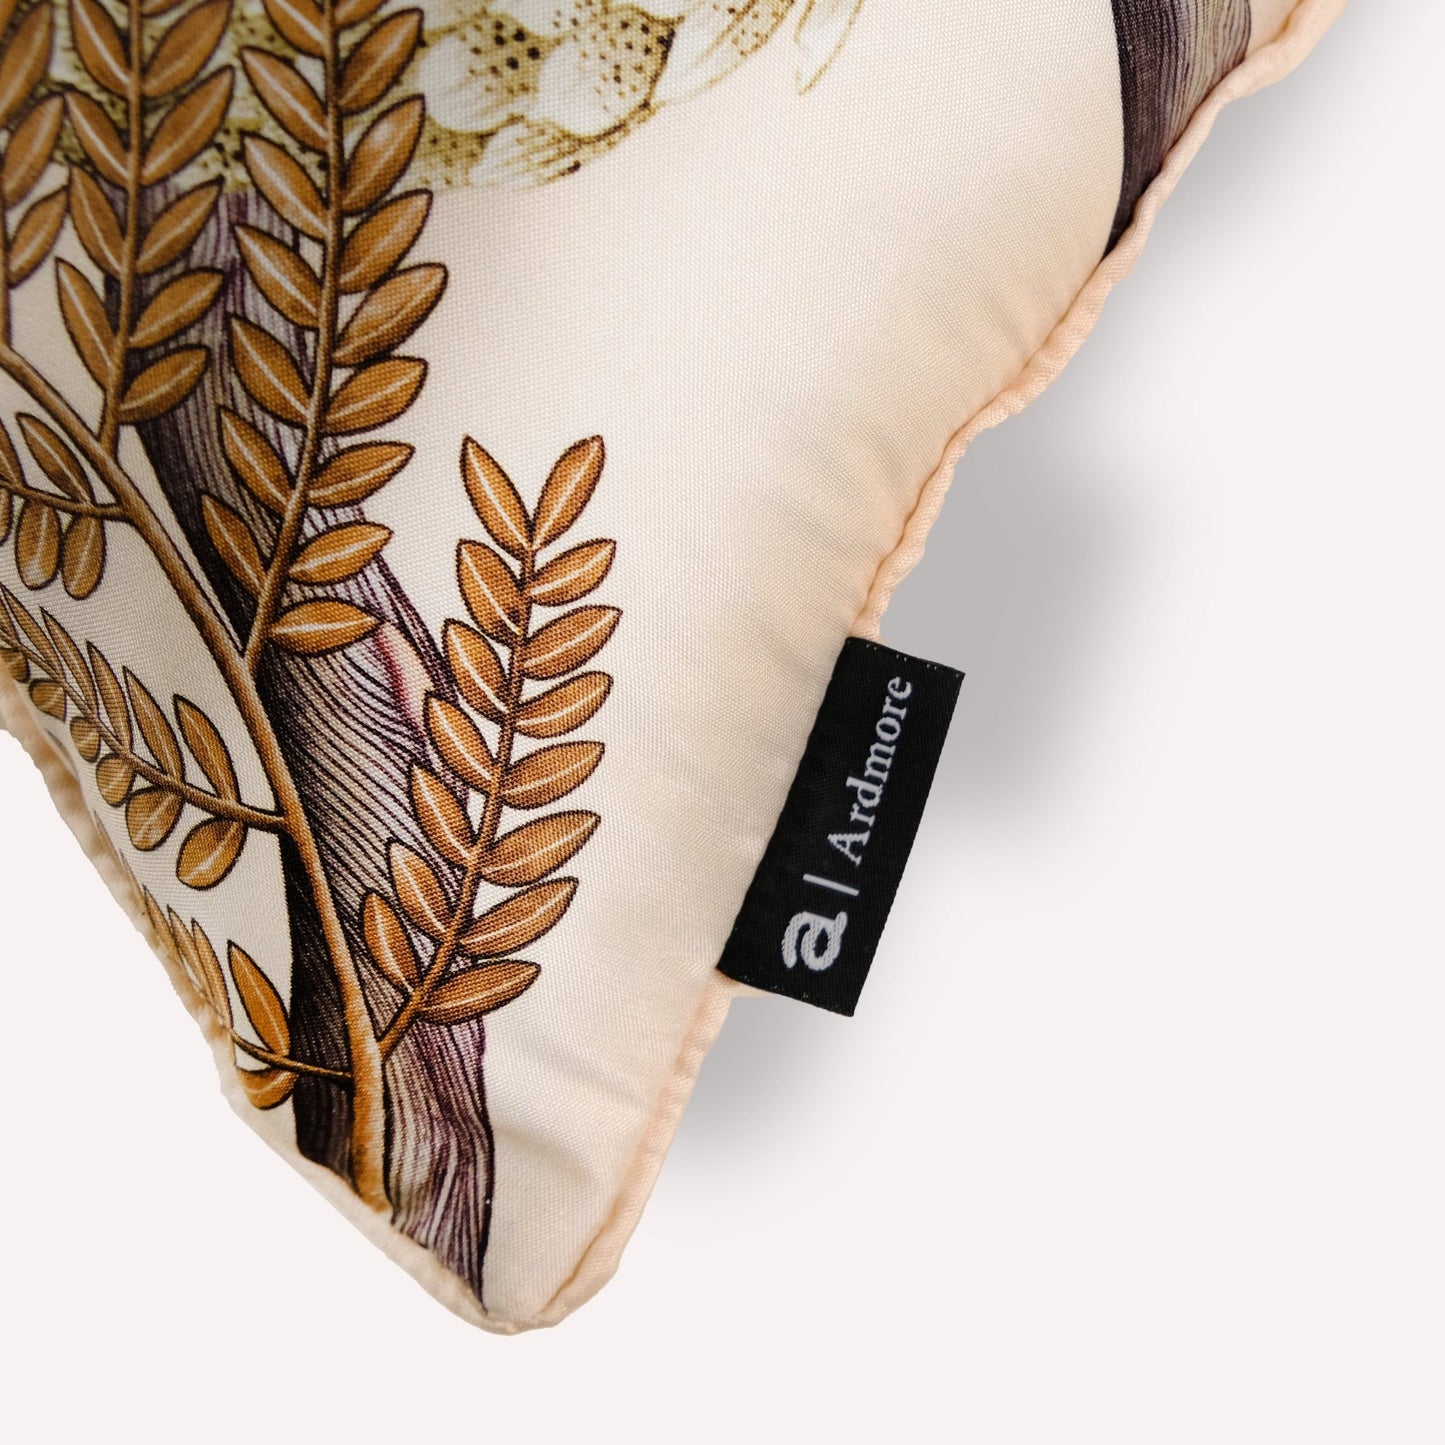 Thanda Pangolin in Pearl Silk Cushion Cover